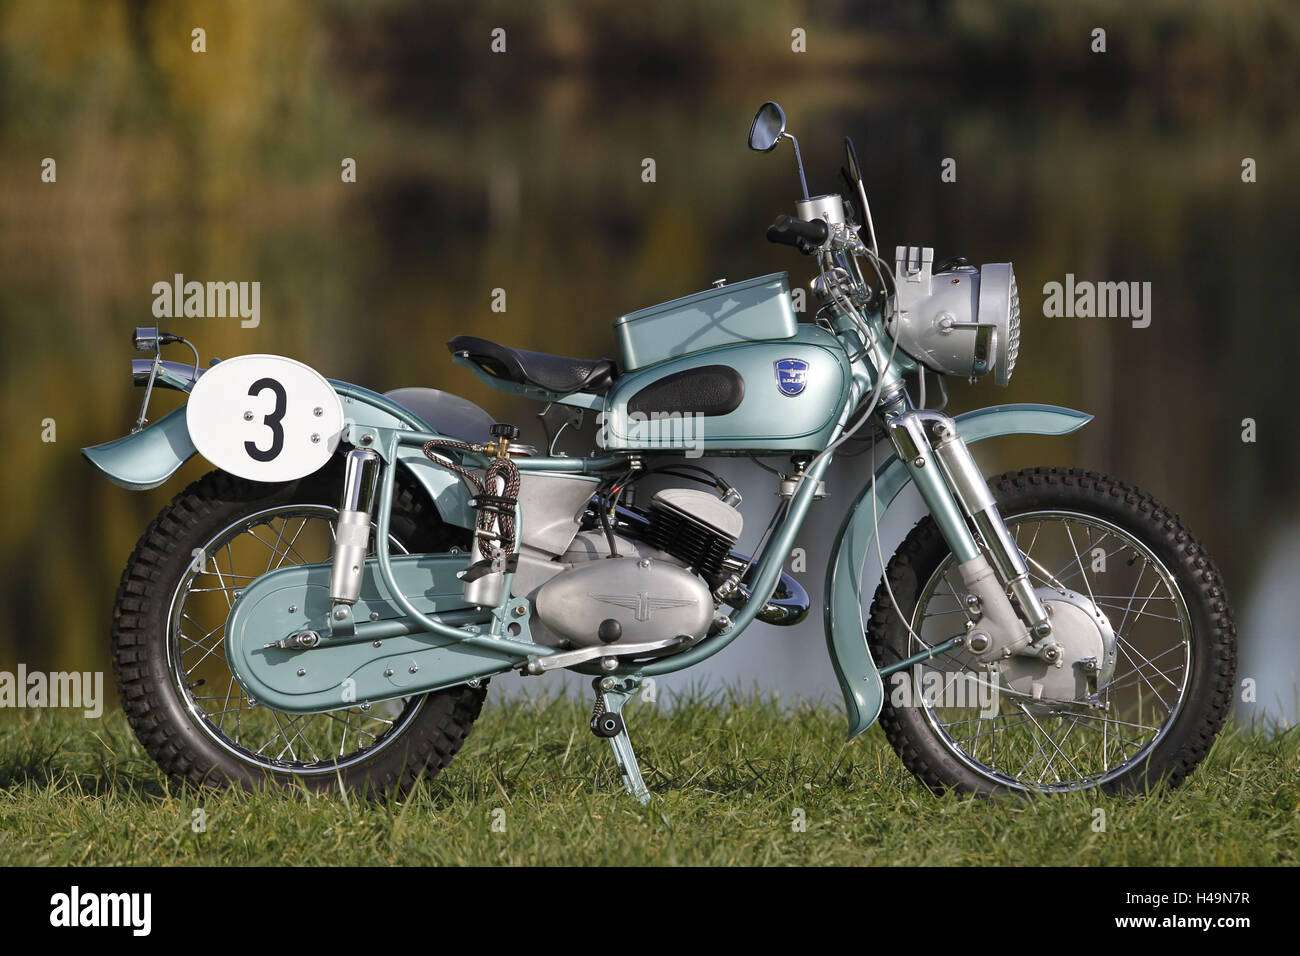 Motociclo, Adler, moto d'epoca, anno di fabbricazione sconosciuta, in piedi, lato destro, Foto Stock